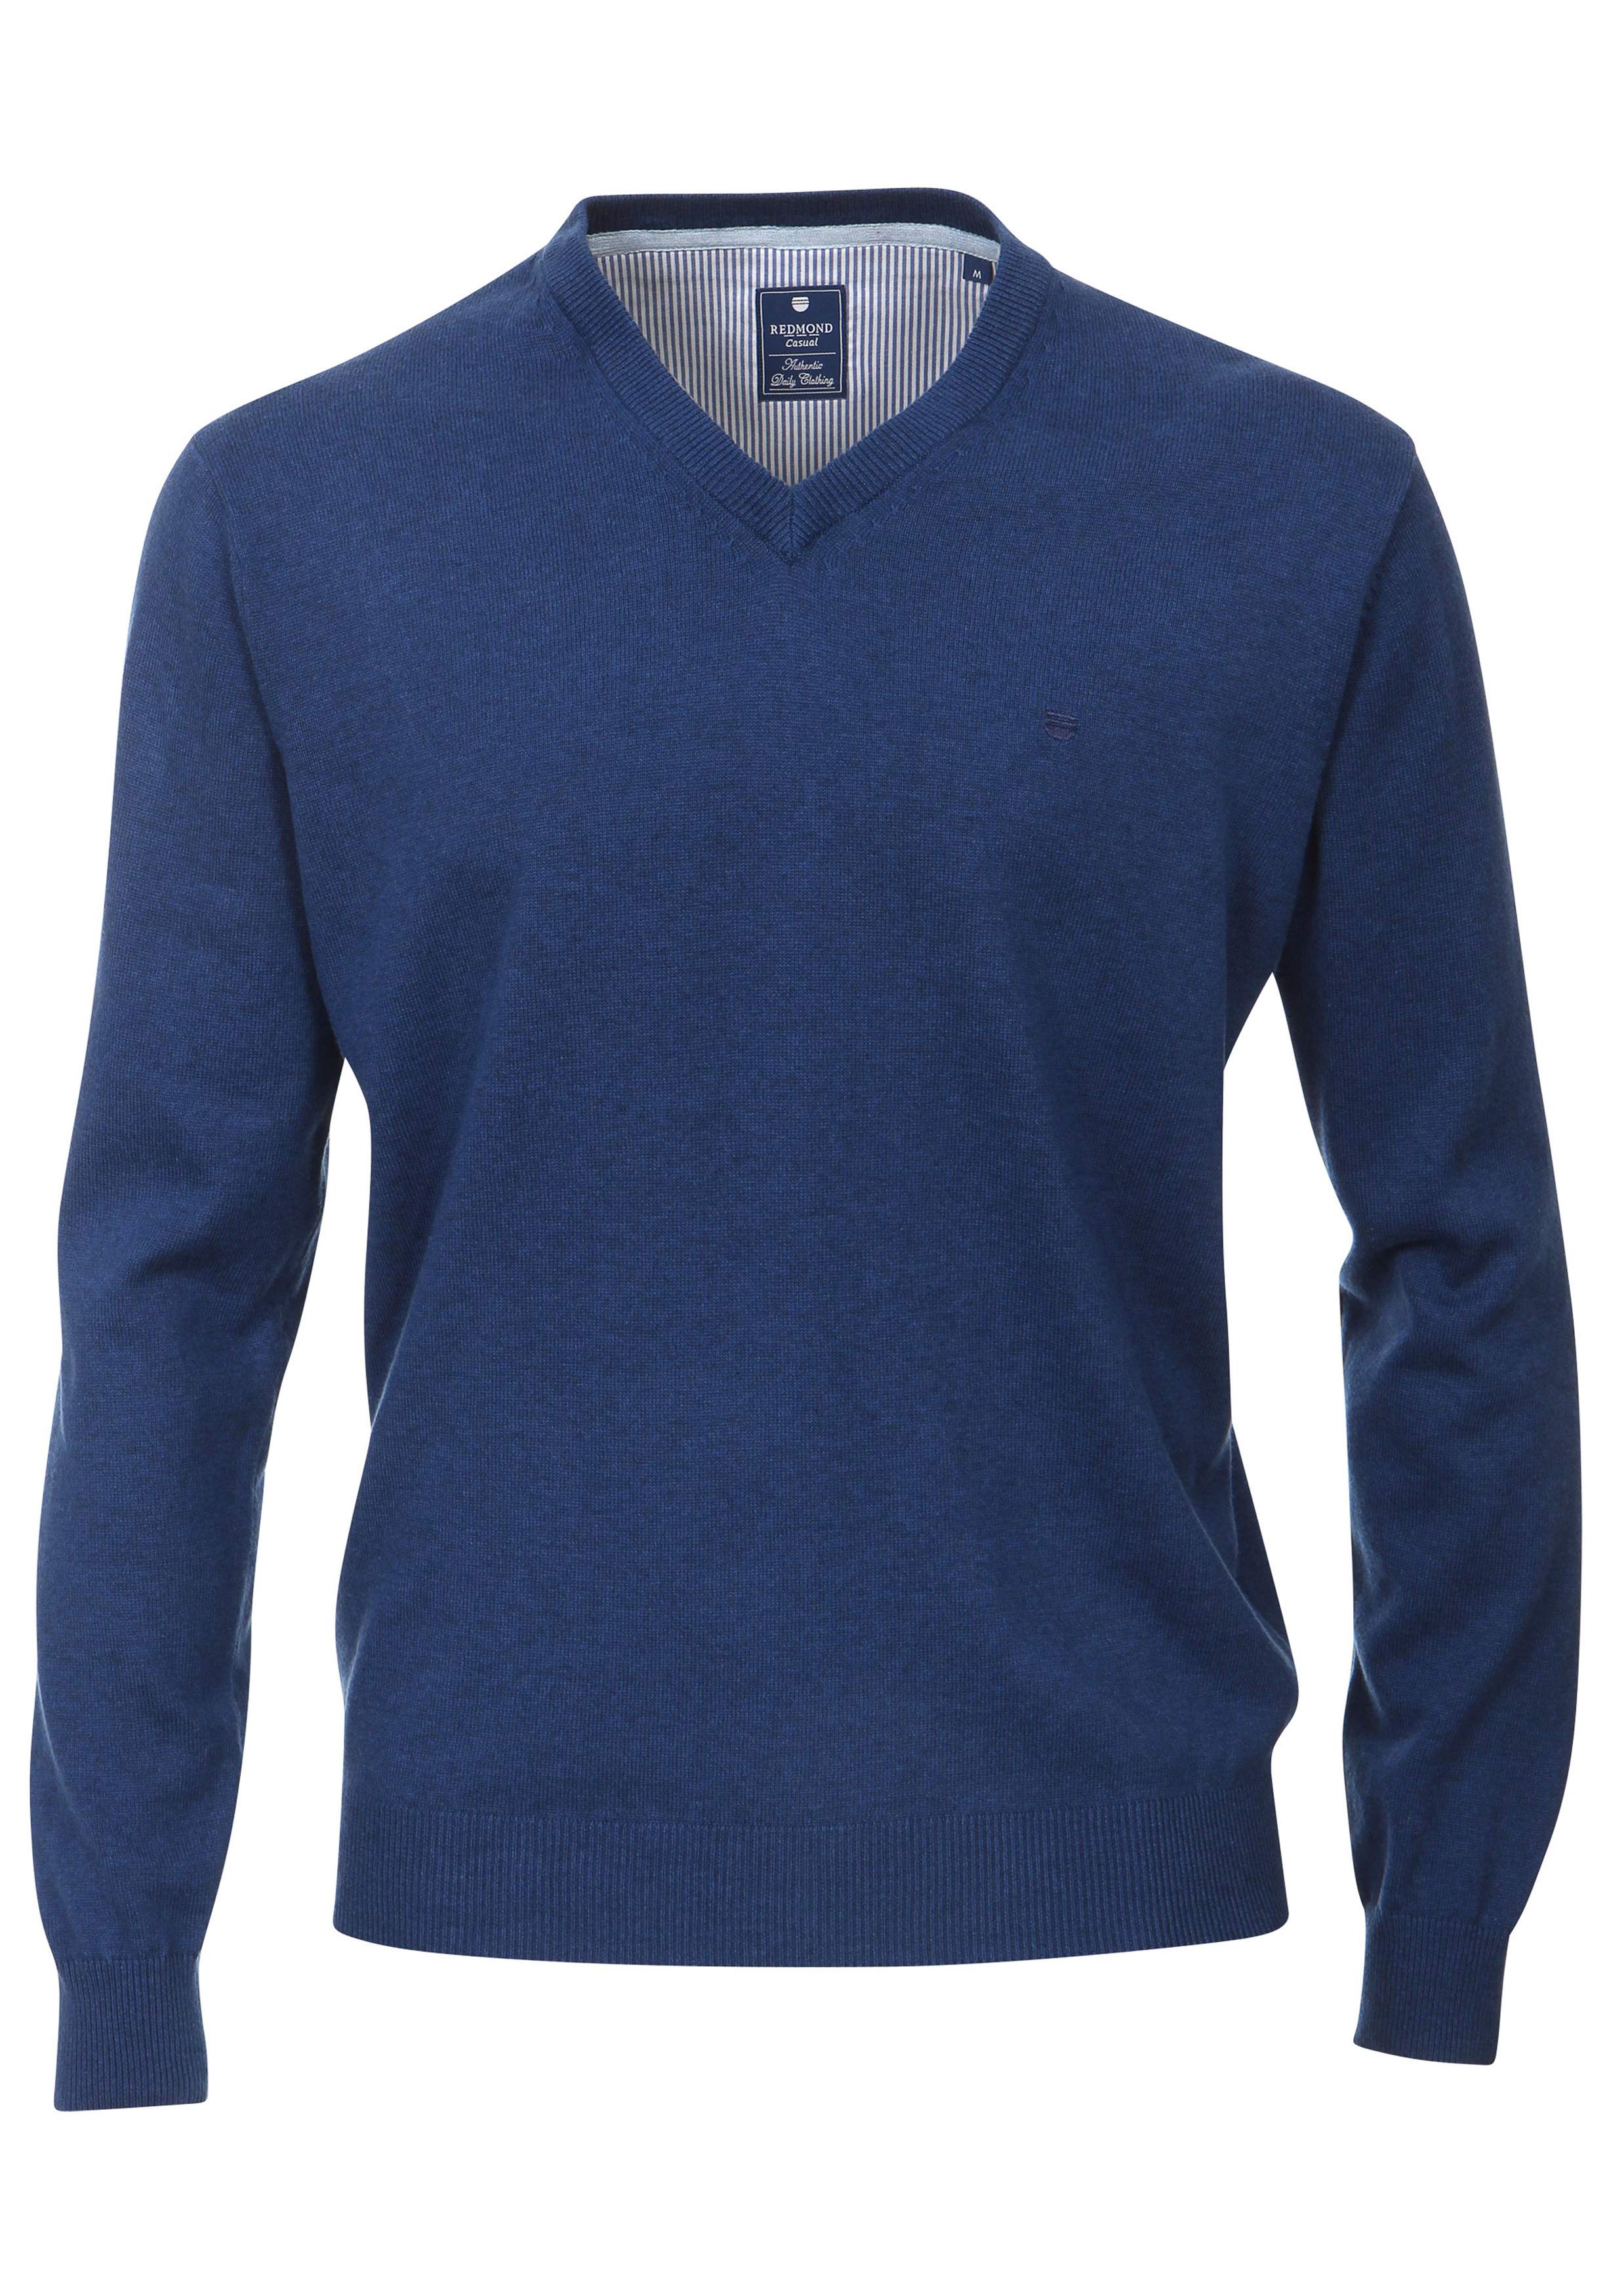 Lijm omzeilen ondernemen Redmond heren trui katoen, V-hals, jeans-blauw - Shop de nieuwste  voorjaarsmode